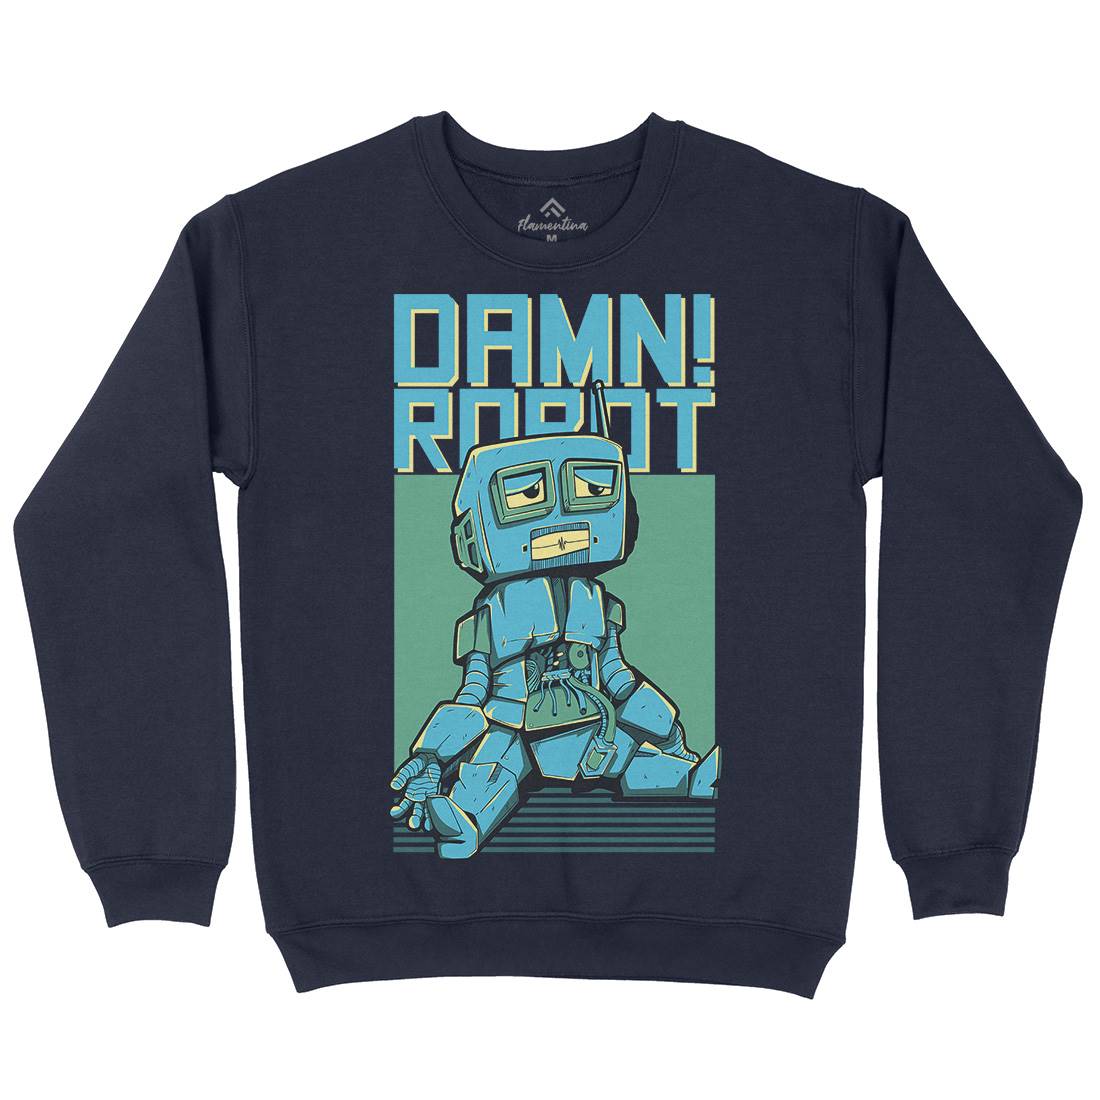 Damn Robot Kids Crew Neck Sweatshirt Space D743